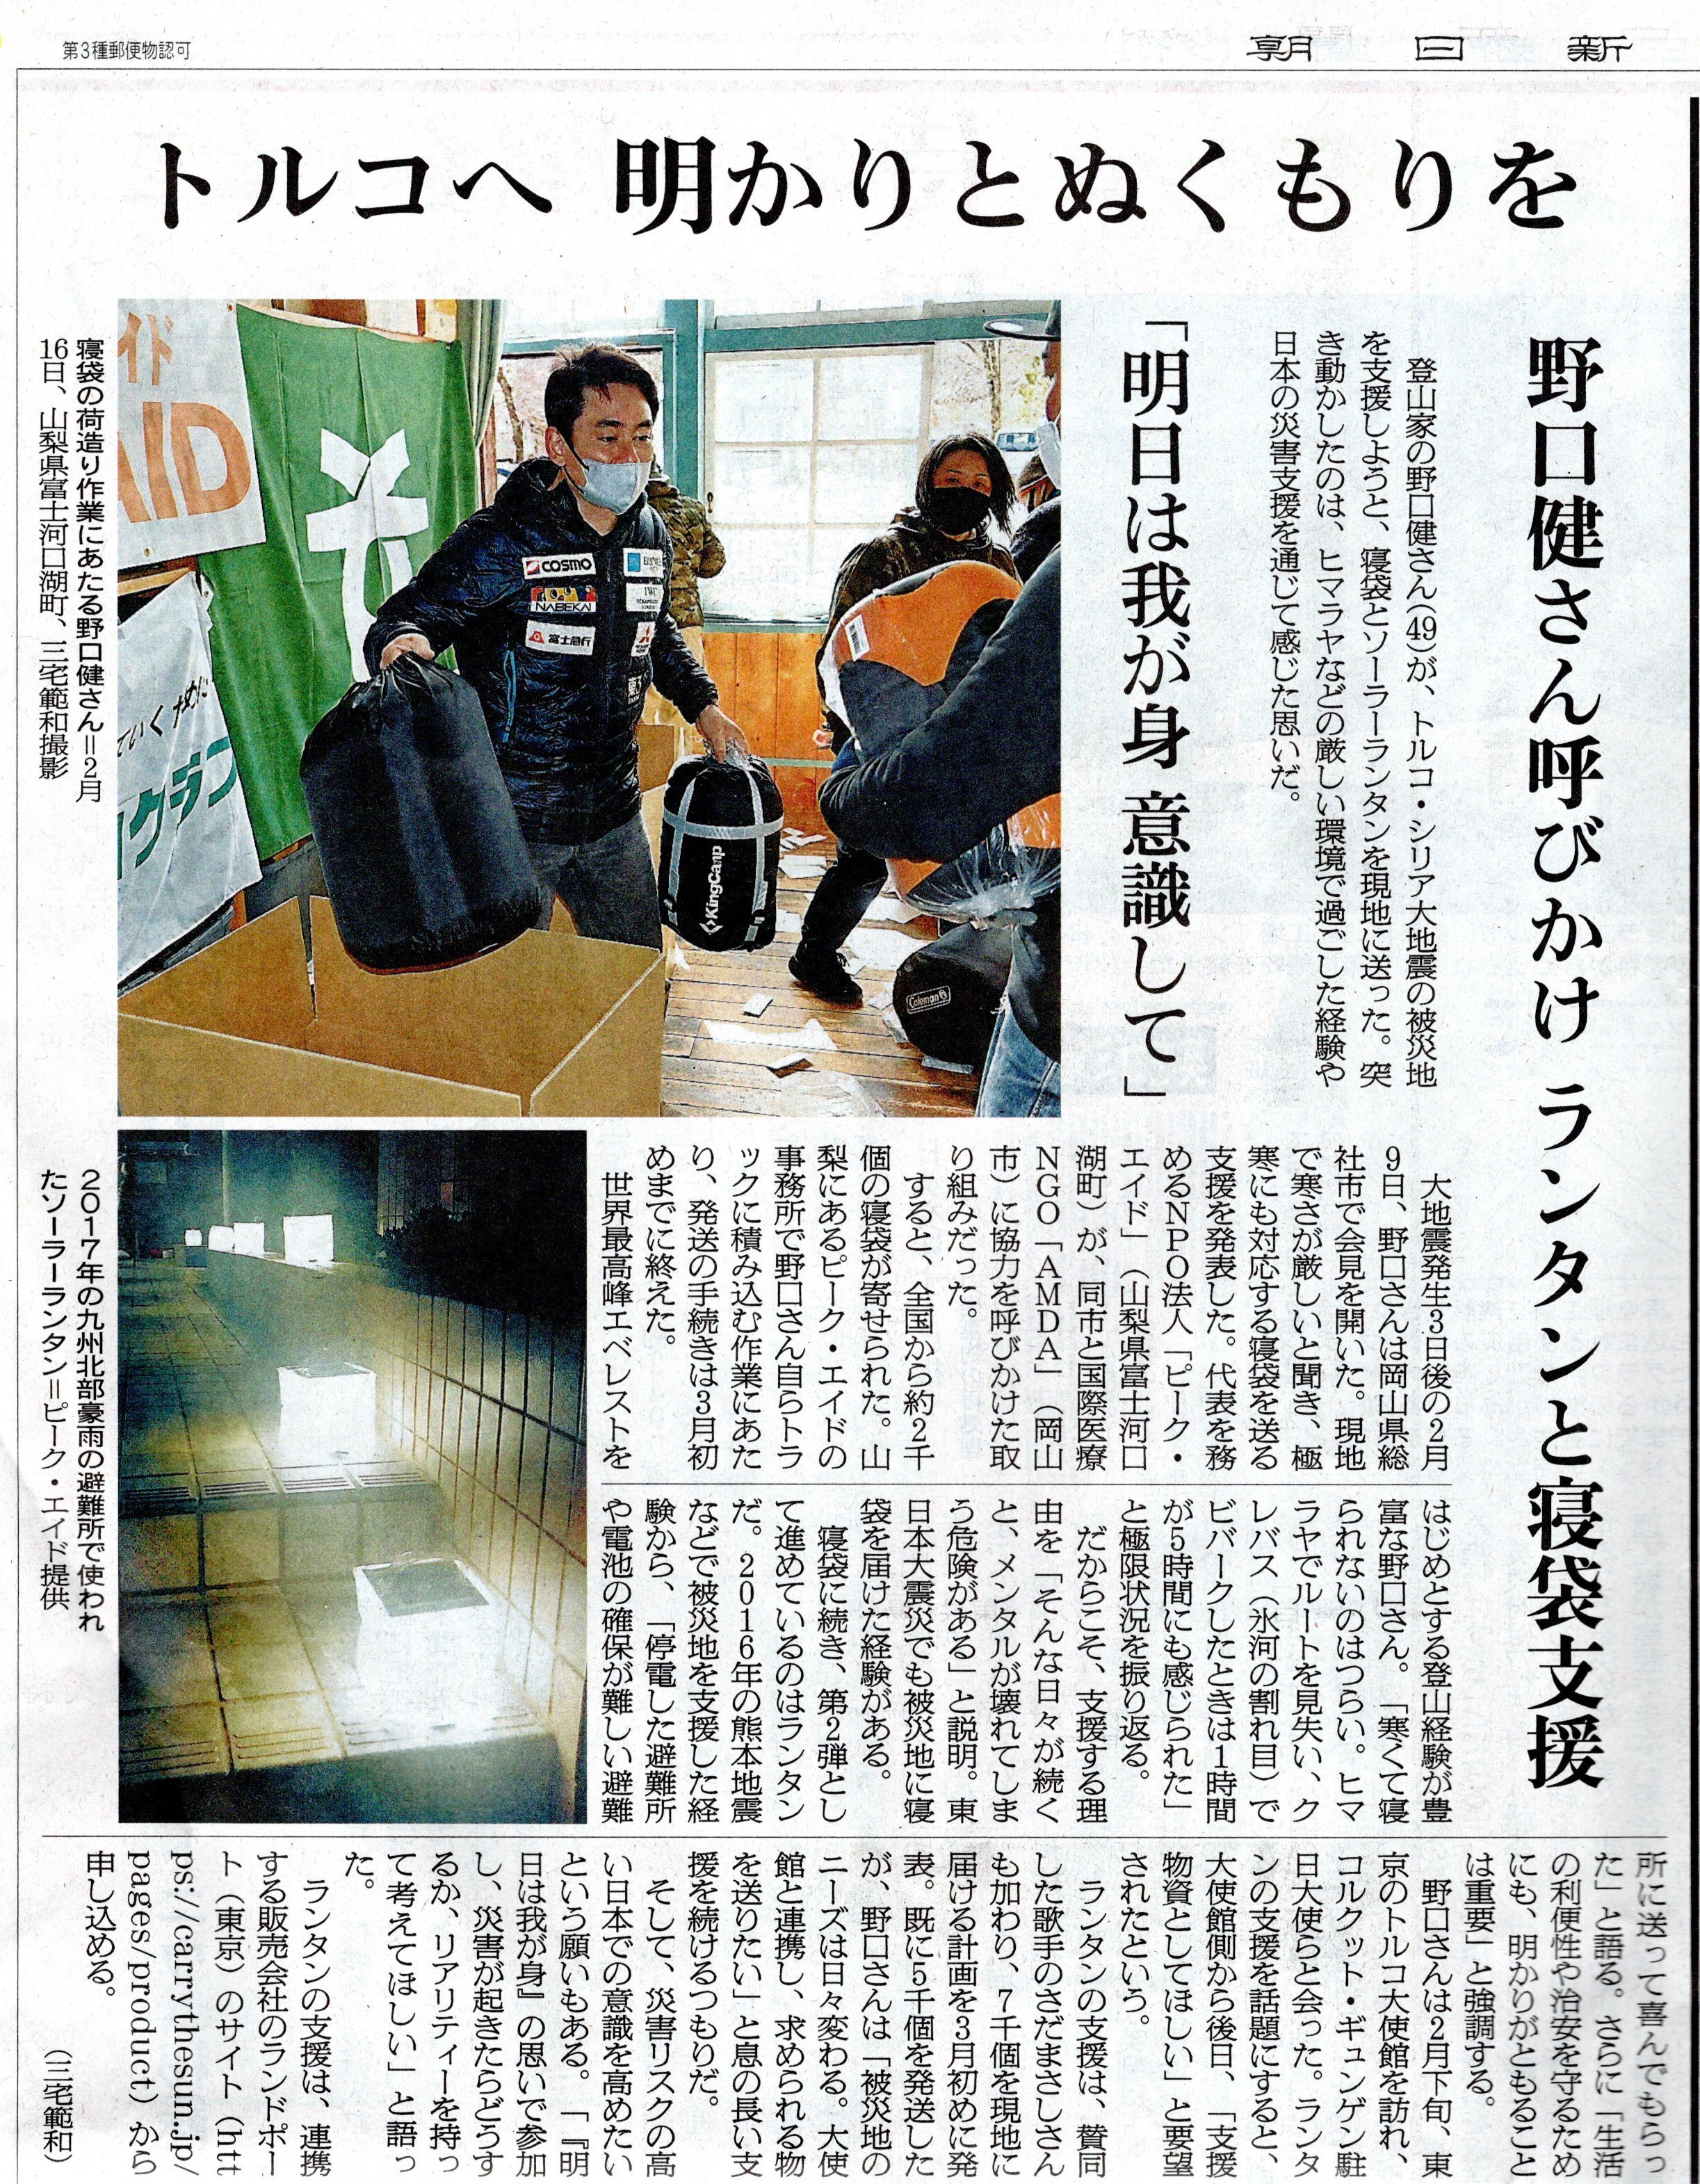 トルコ地震支援、朝日新聞に掲載されました